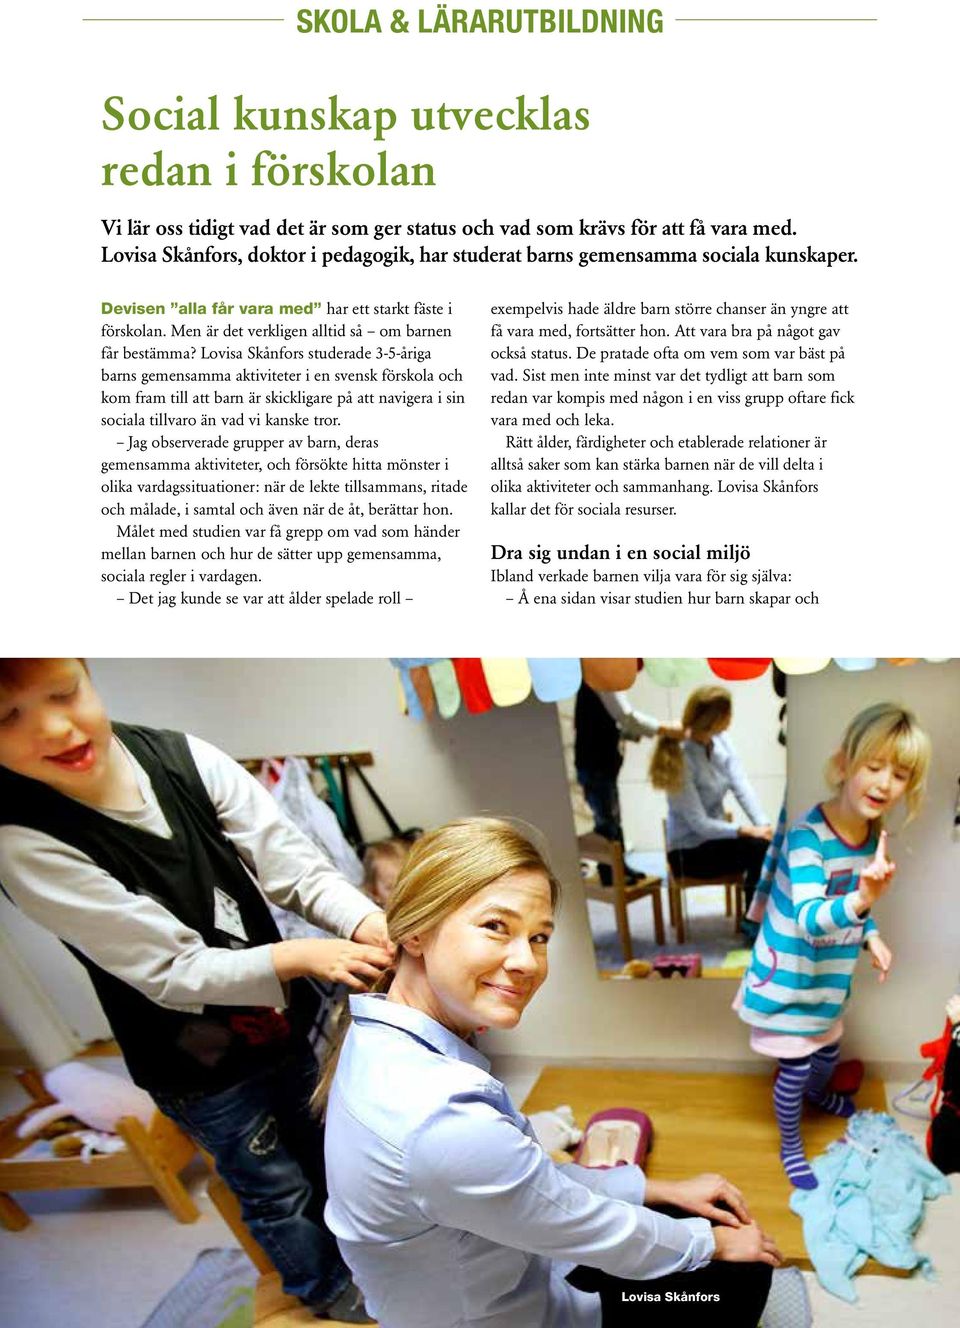 Lovisa Skånfors studerade 3-5-åriga barns gemensamma aktiviteter i en svensk förskola och kom fram till att barn är skickligare på att navigera i sin sociala tillvaro än vad vi kanske tror.